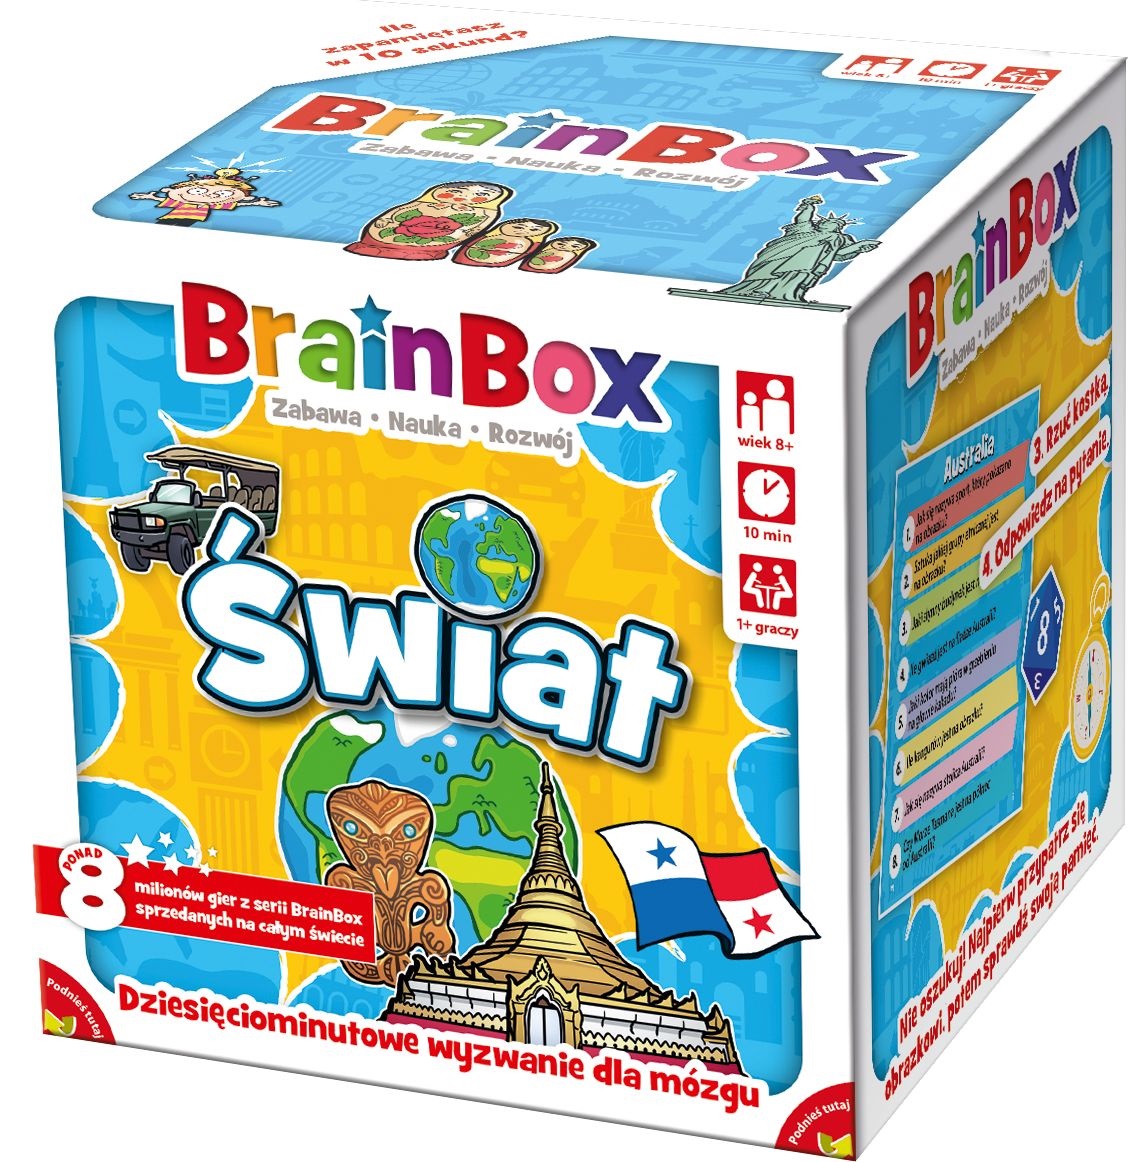 BrainBox Świat gra karciana Rebel (druga edycja)